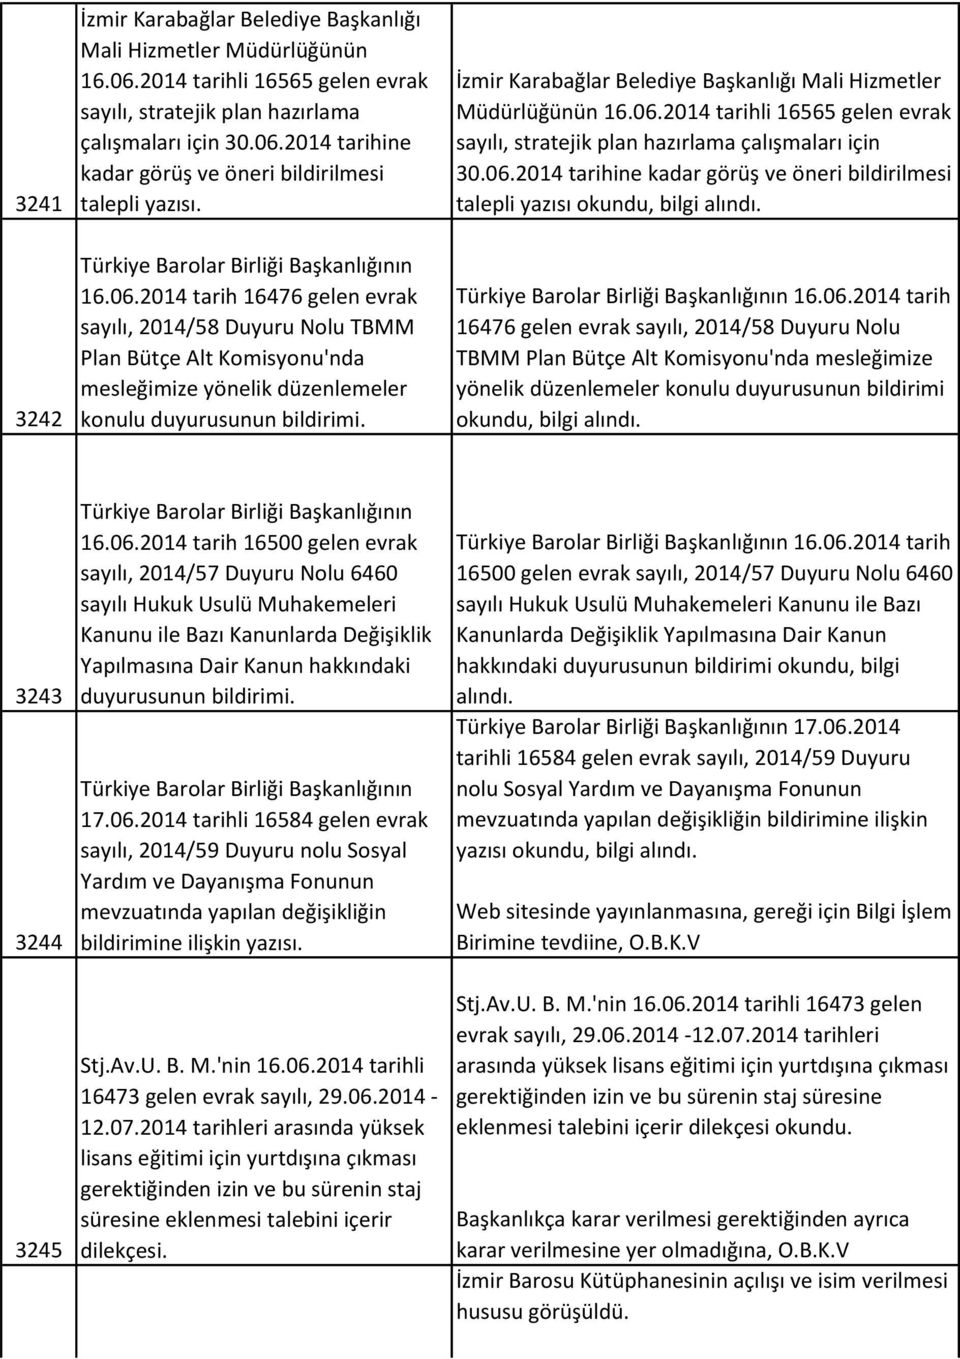 İzmir Karabağlar Belediye Başkanlığı Mali Hizmetler Müdürlüğünün 16.06.2014 tarihli 16565 gelen evrak sayılı, stratejik plan hazırlama çalışmaları için 30.06.2014 tarihine kadar görüş ve öneri bildirilmesi talepli yazısı okundu, bilgi alındı.